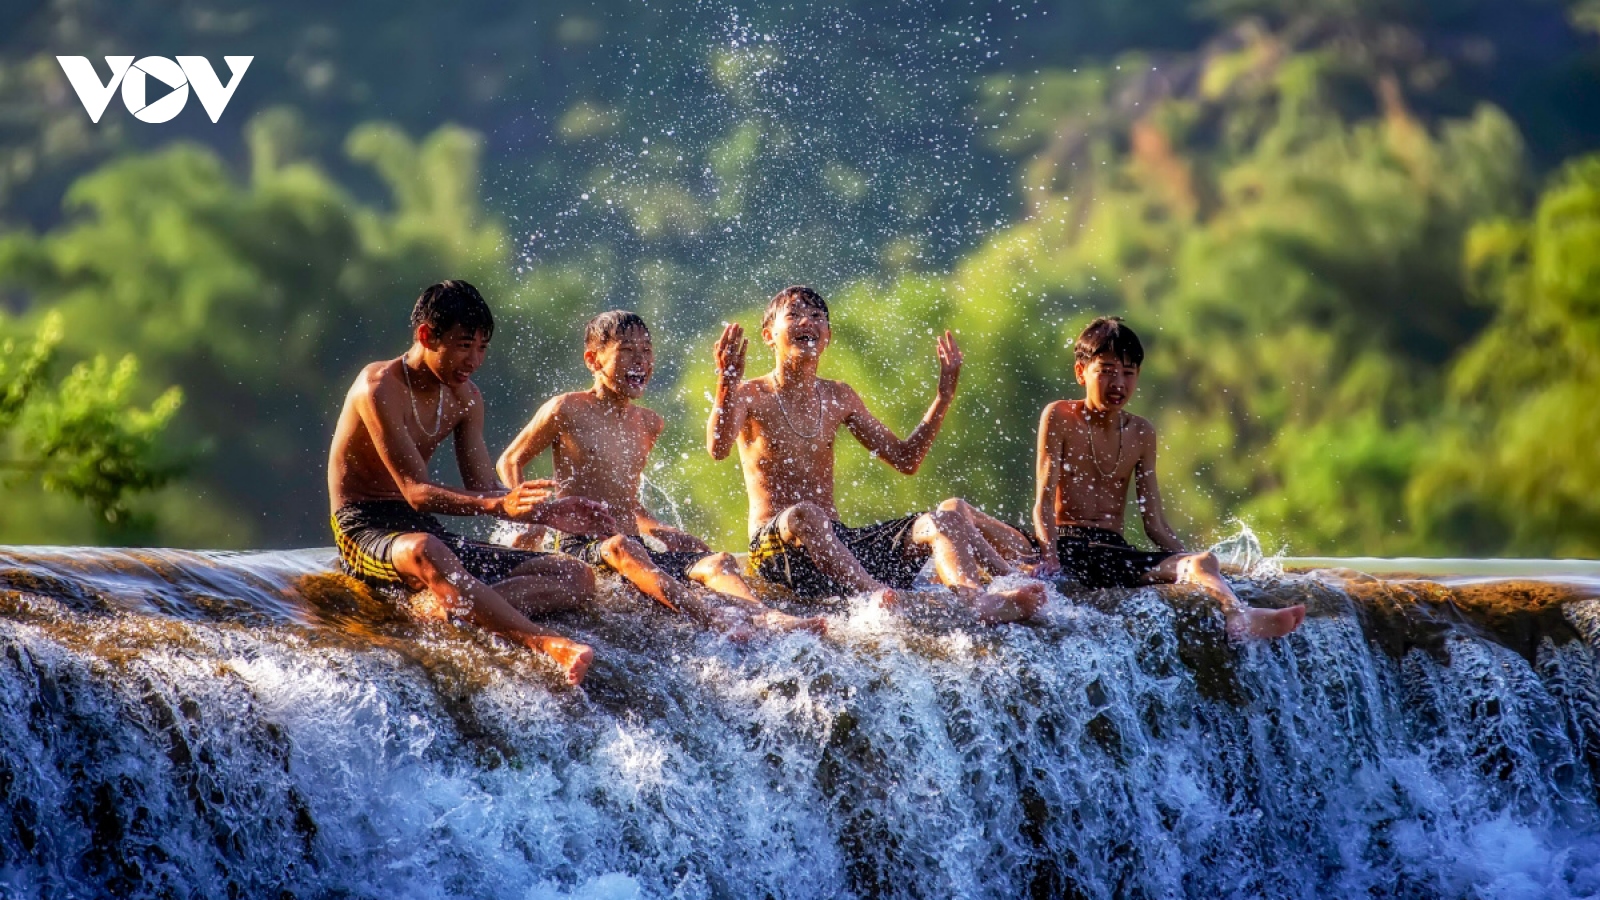 Ethnic children enjoy summer time in northern mountainous region